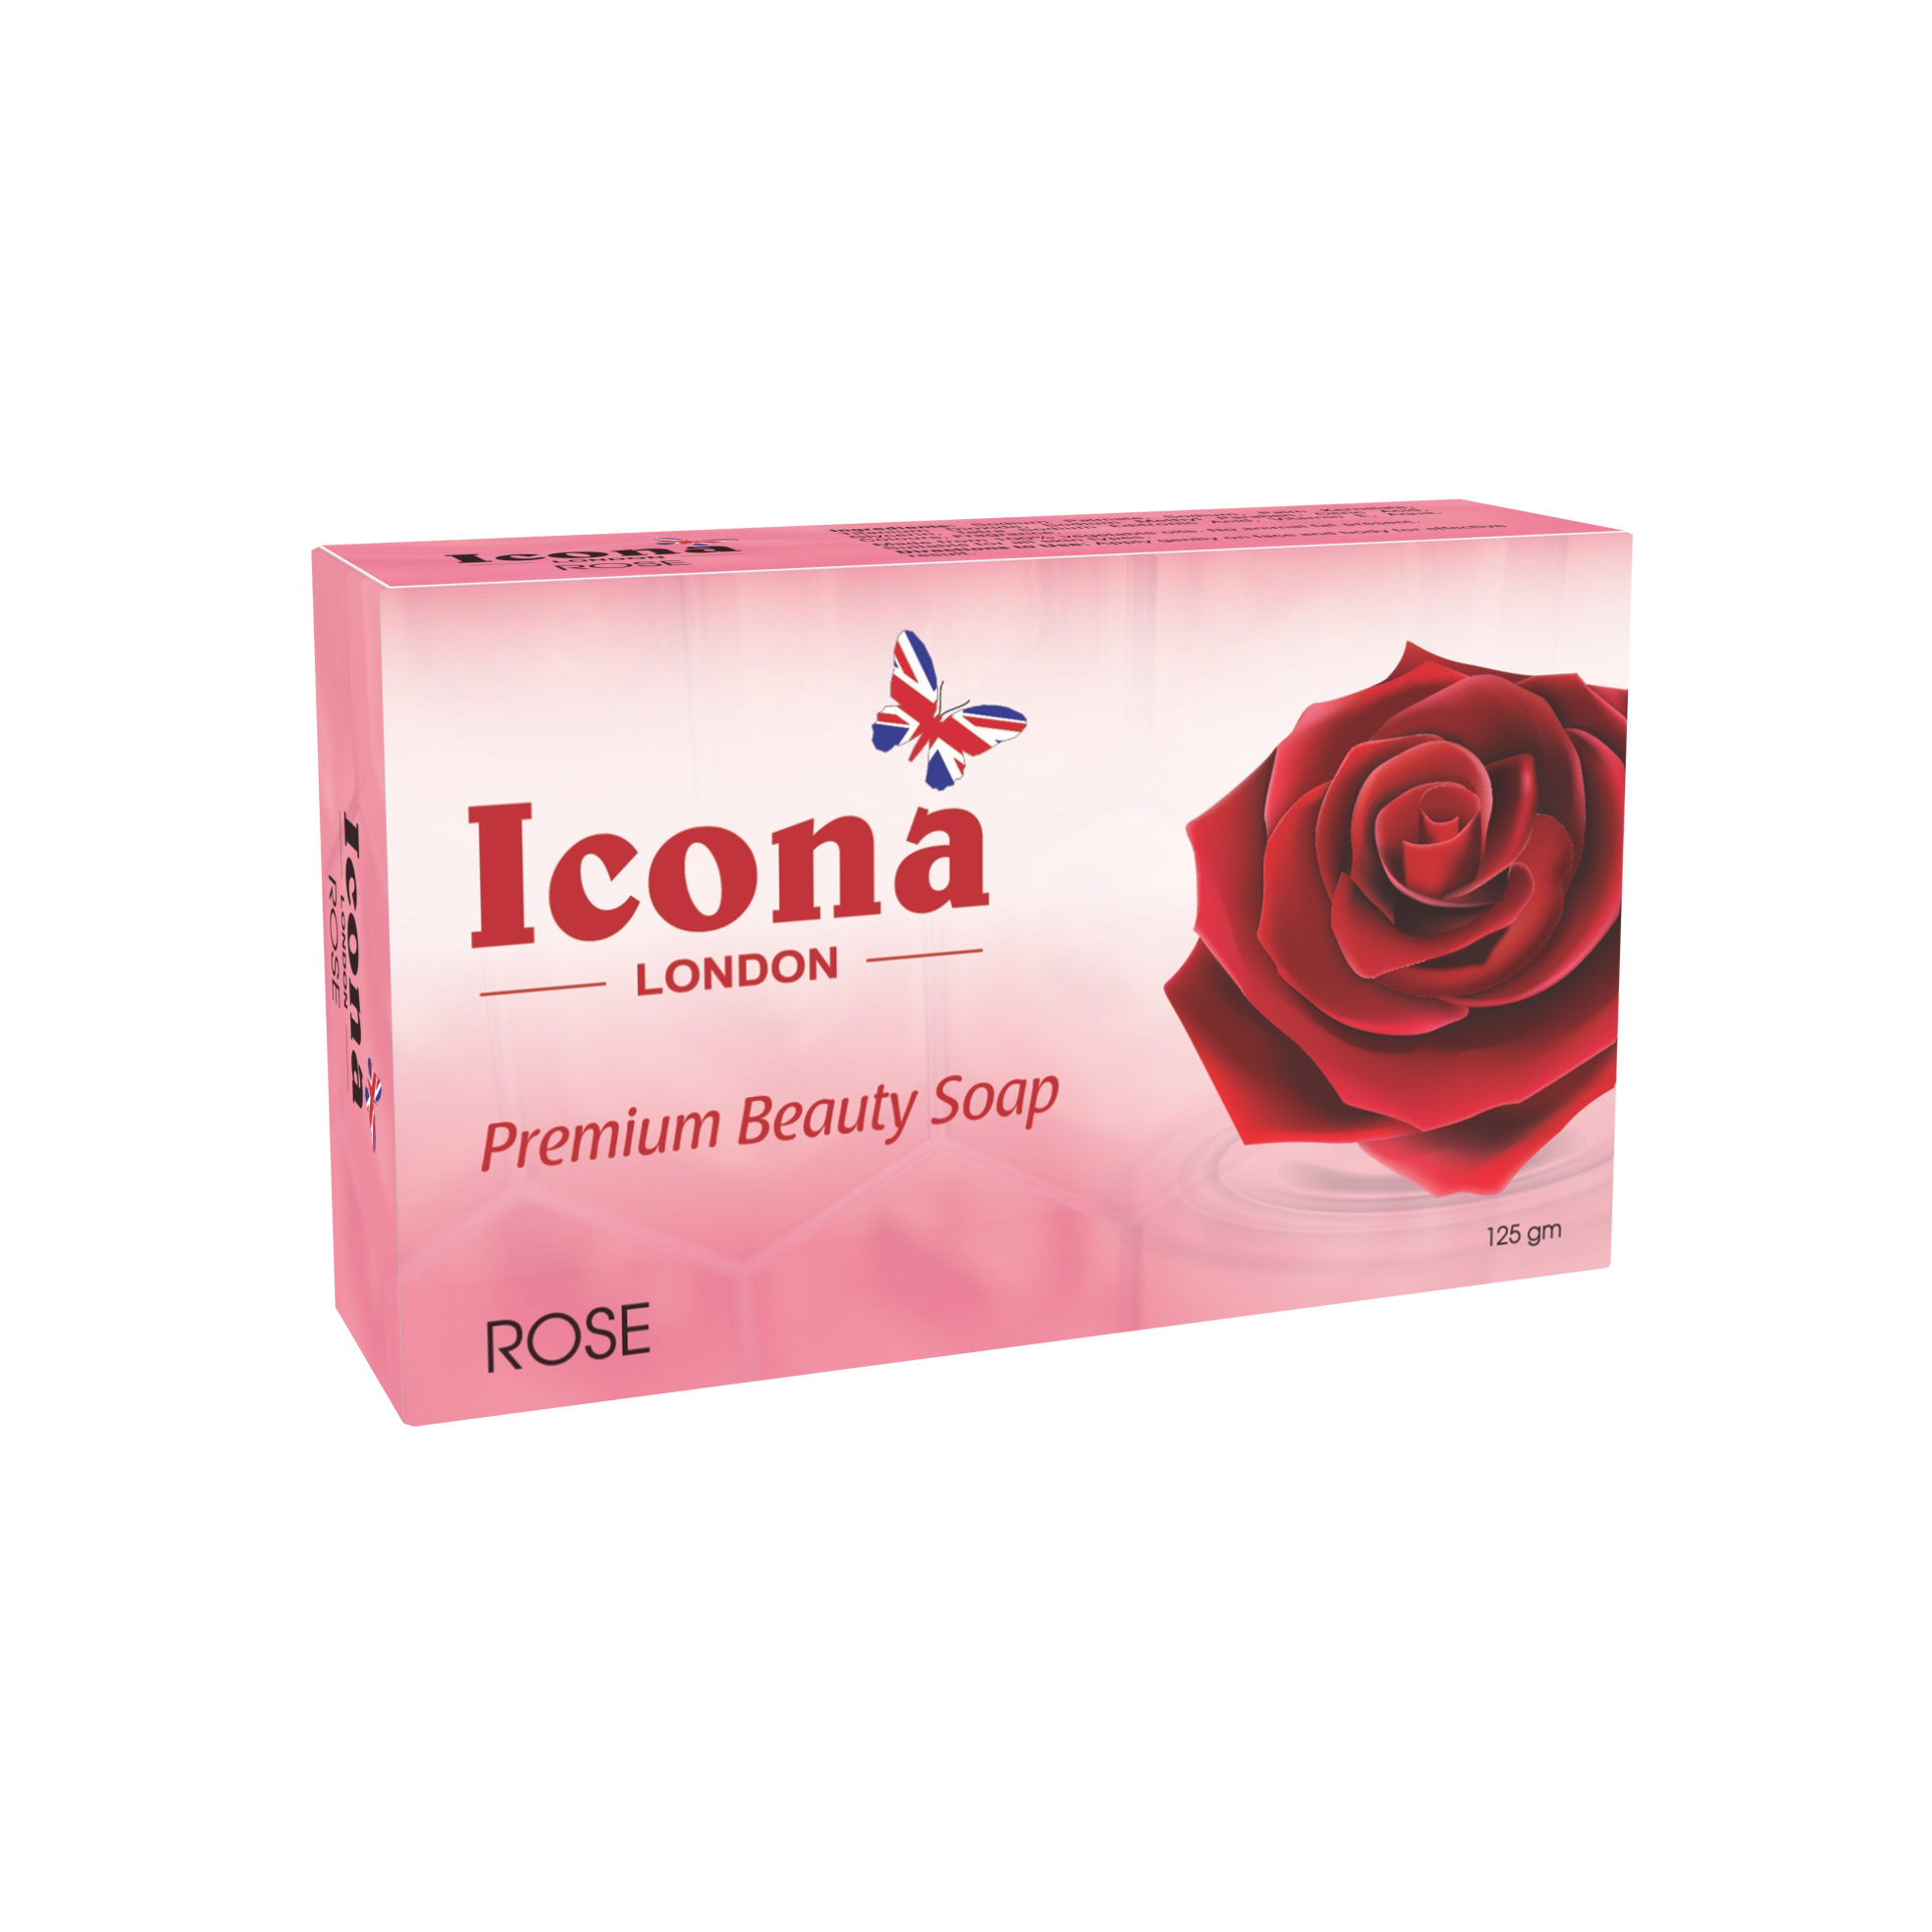 Icona London Beauty Soap (Rose)